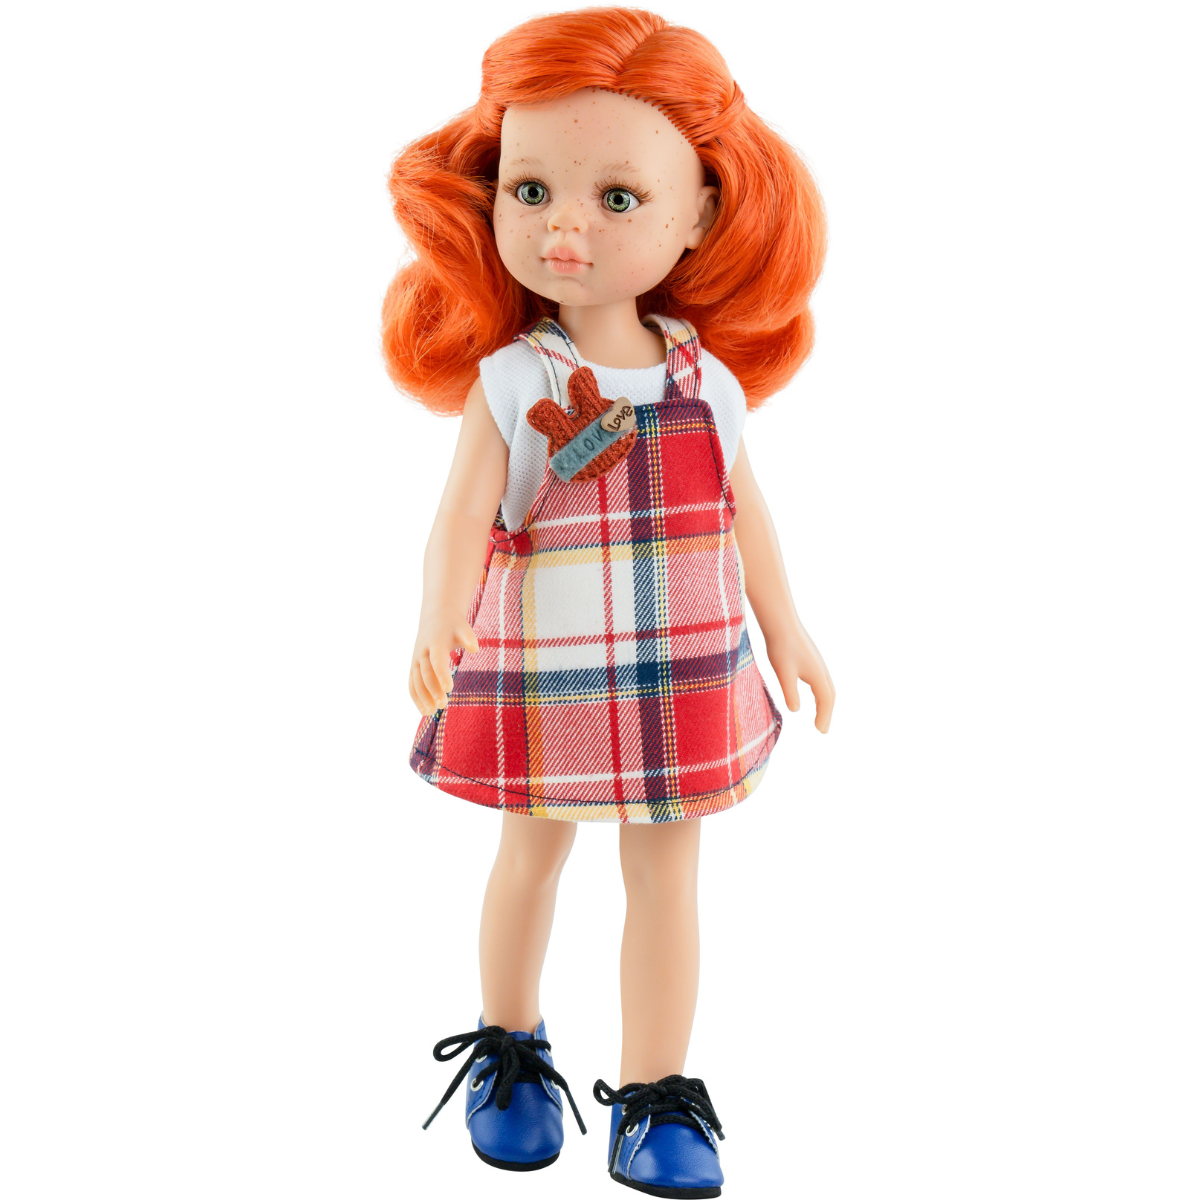 Wunderbare spanische Paola Reina Puppe 32 cm 04528